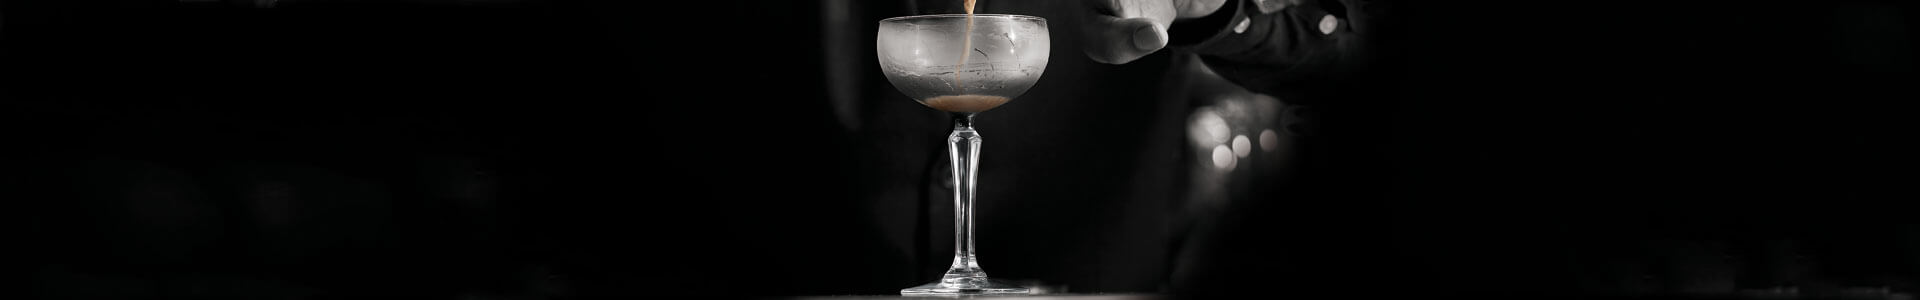 Cocktailschale von Onis aus der Serie S P K S Y, gesprochen speakeasy.